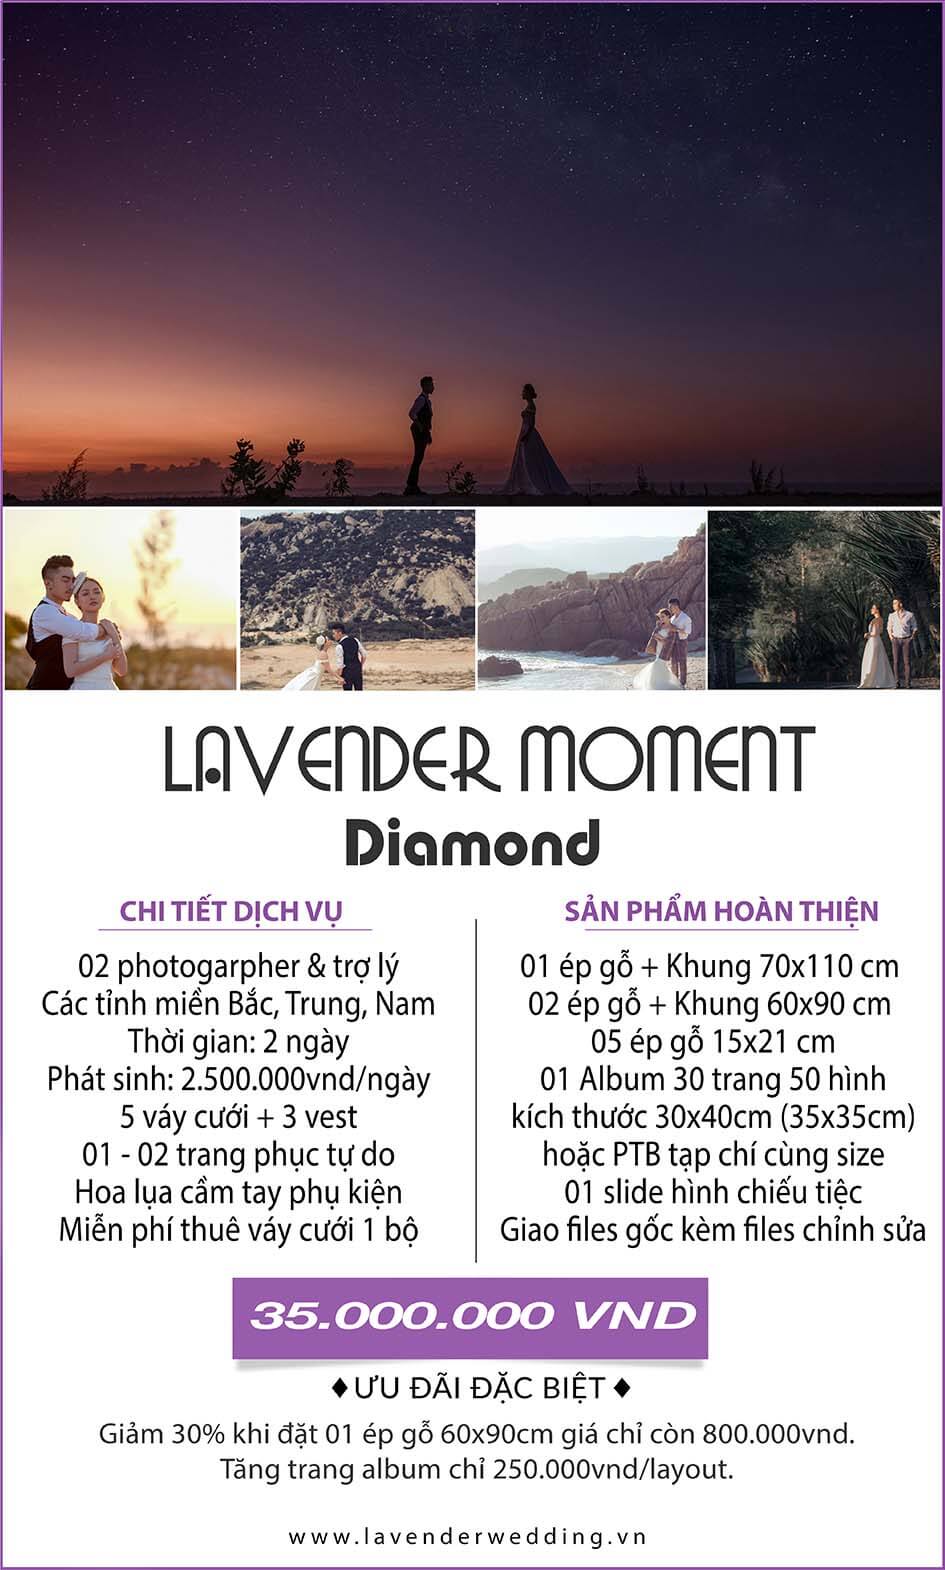 chụp hình cưới uy tín tại các địa điểm nổi tiếng tại Việt Nam